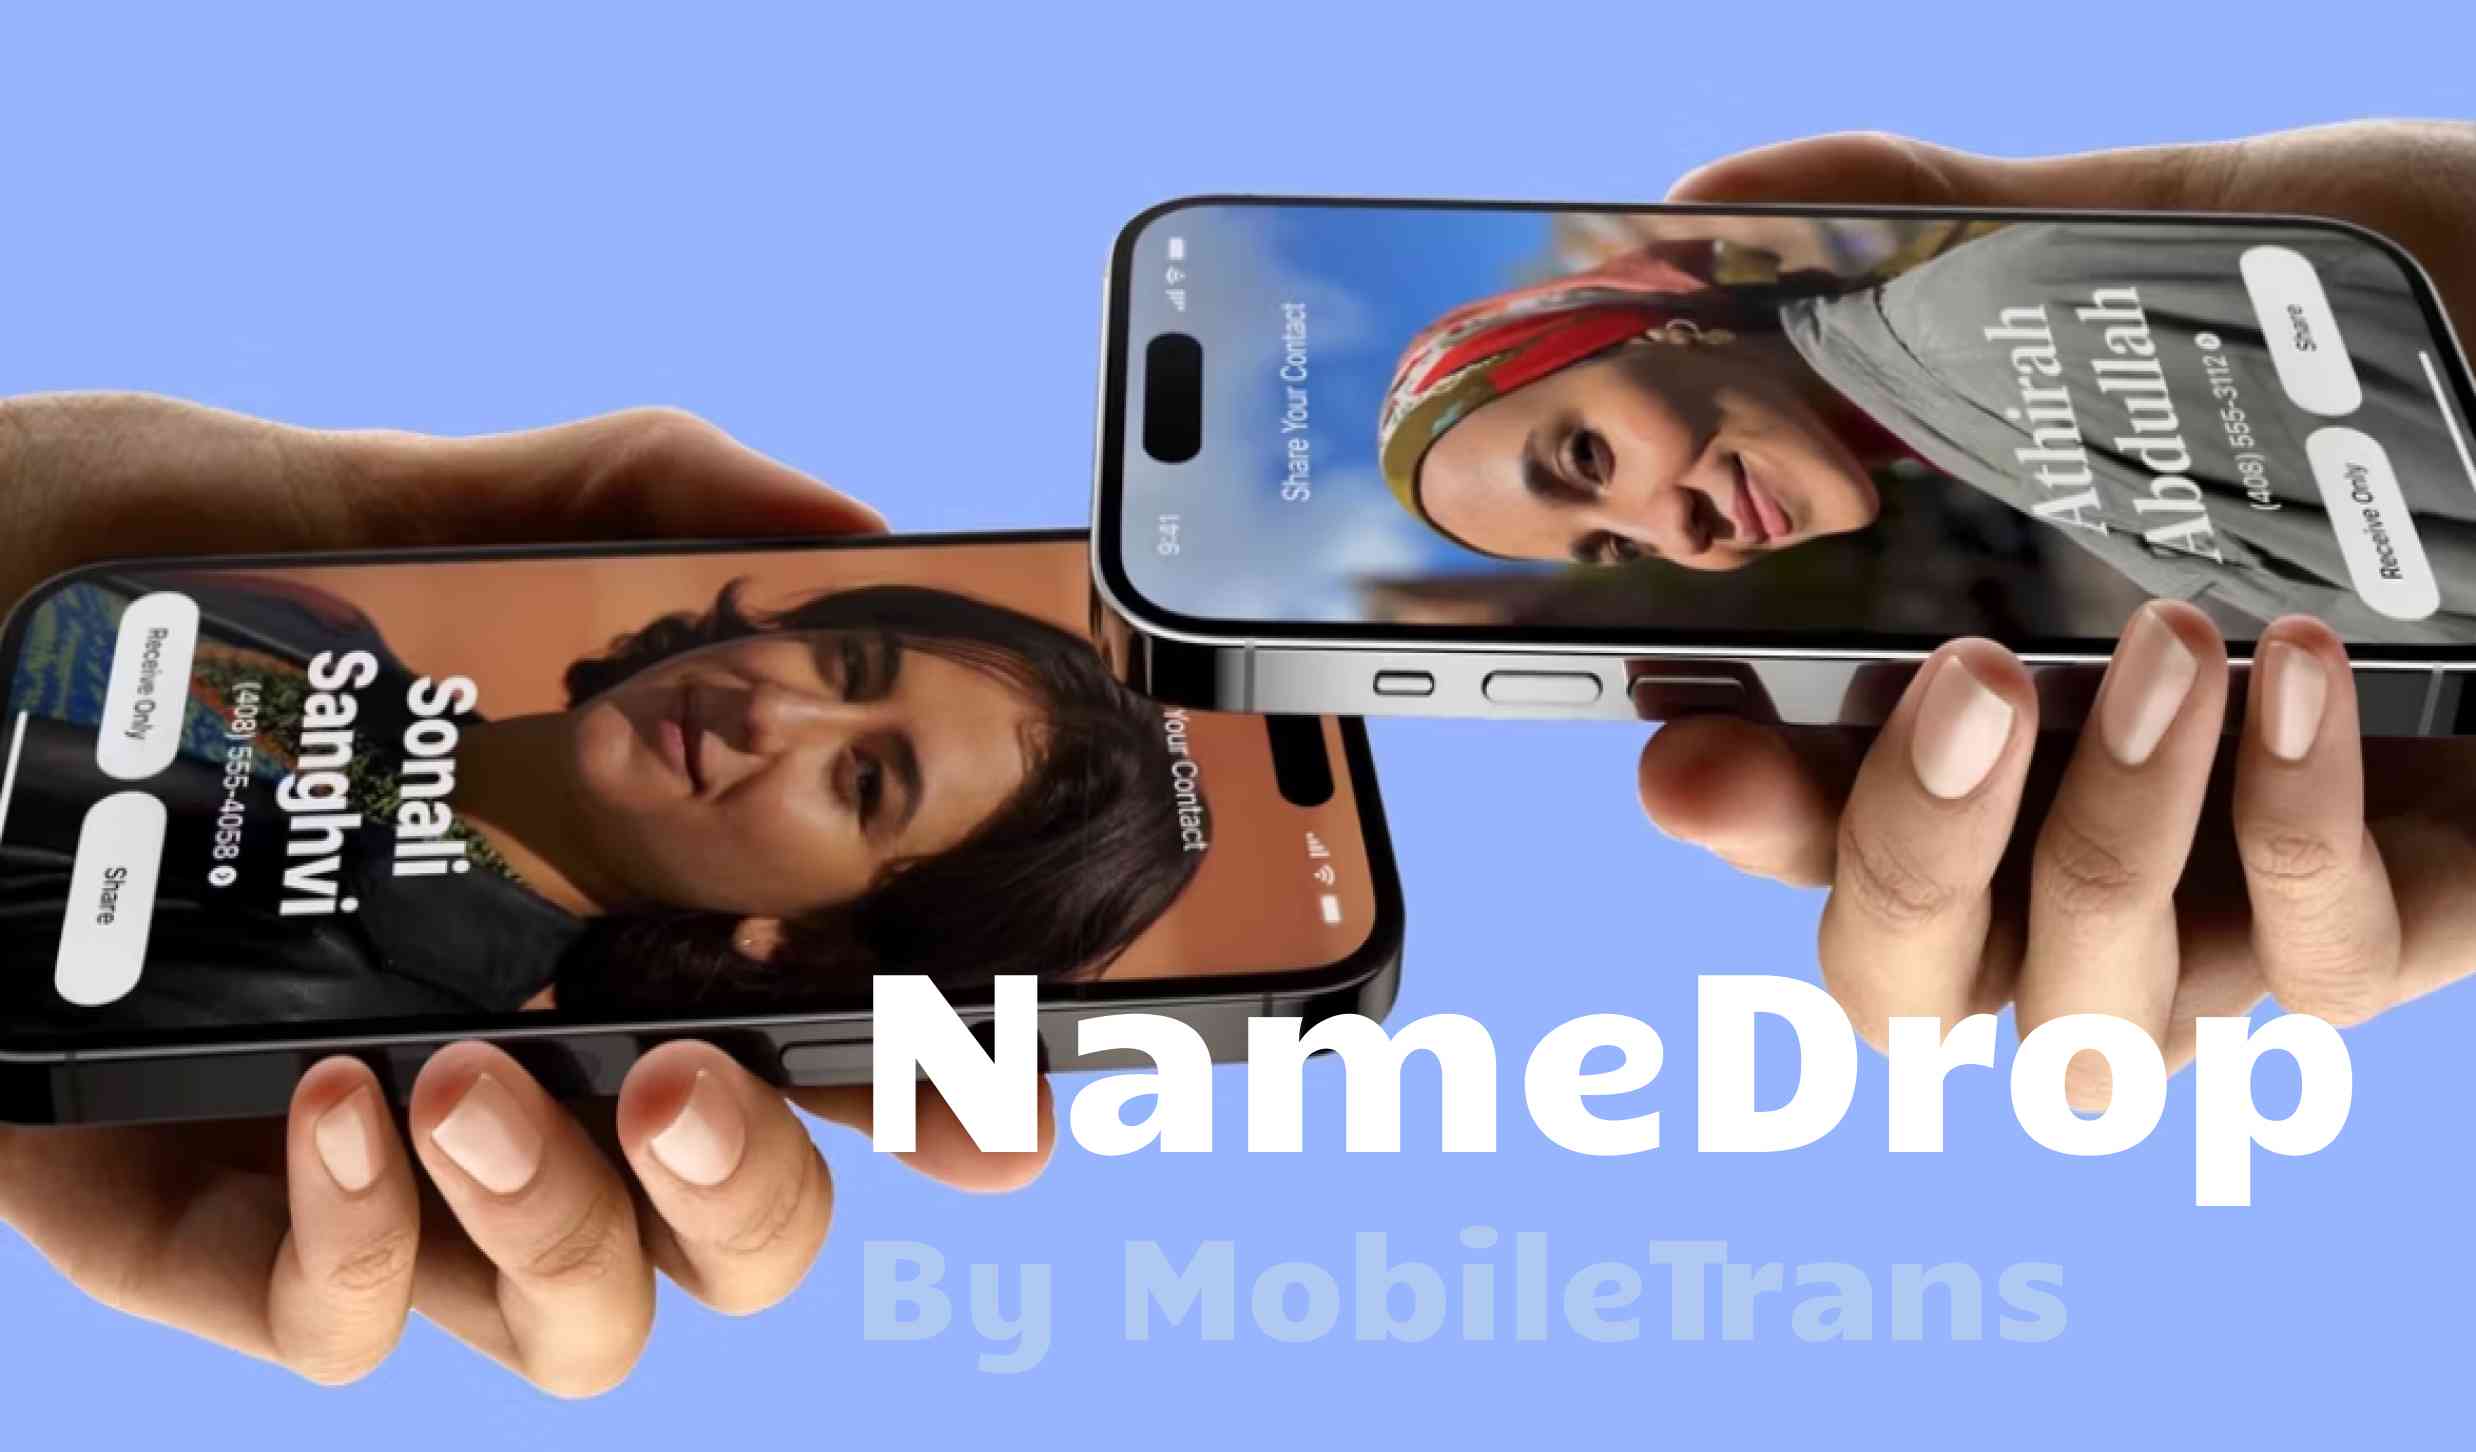 ¿Qué es NameDrop? ¿Cómo Usar NameDrop en iPhone?